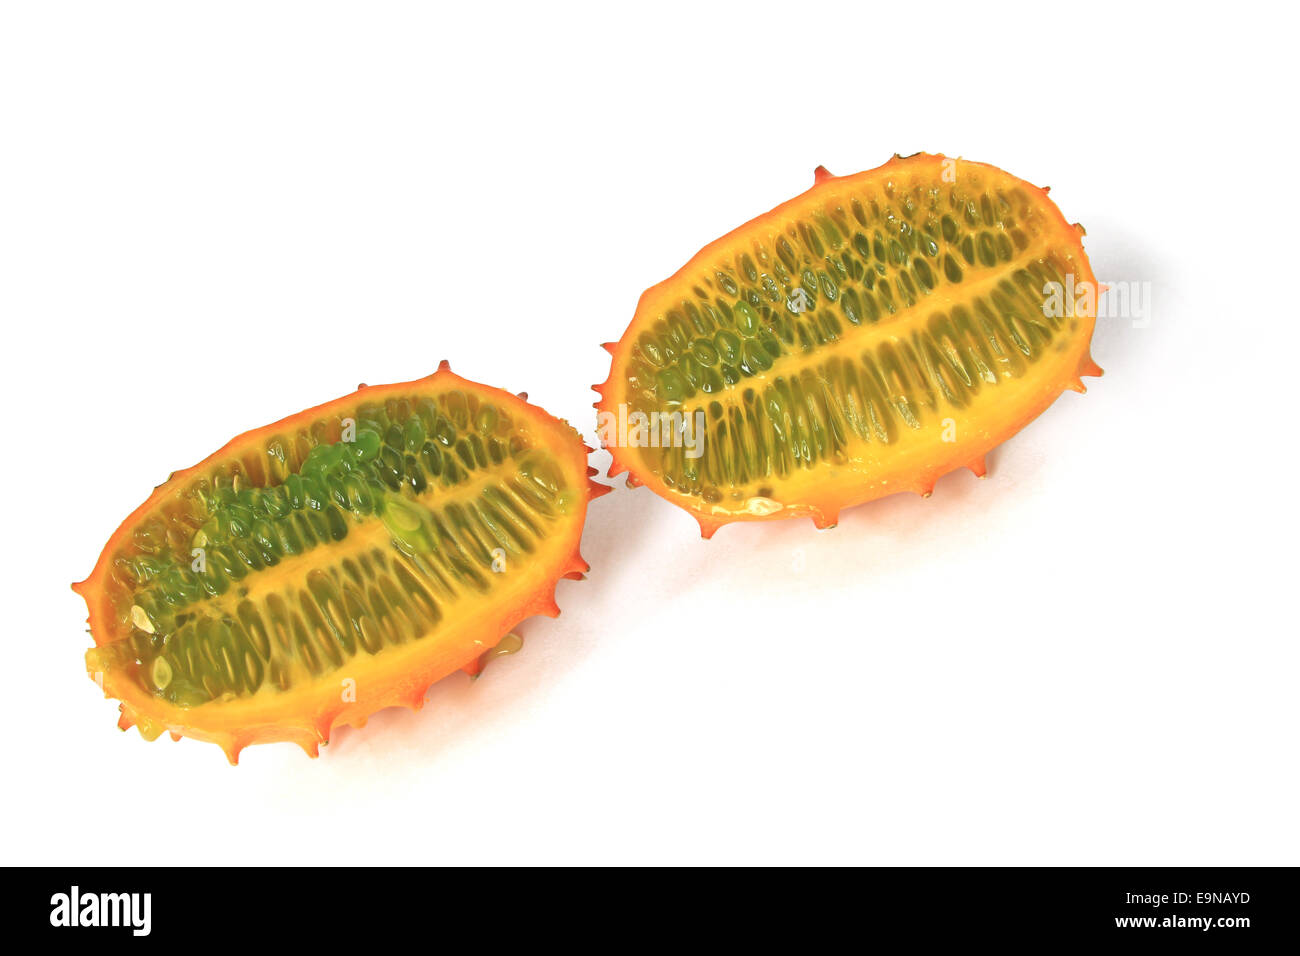 Horned melon (Cucumis metuliferus) Stock Photo